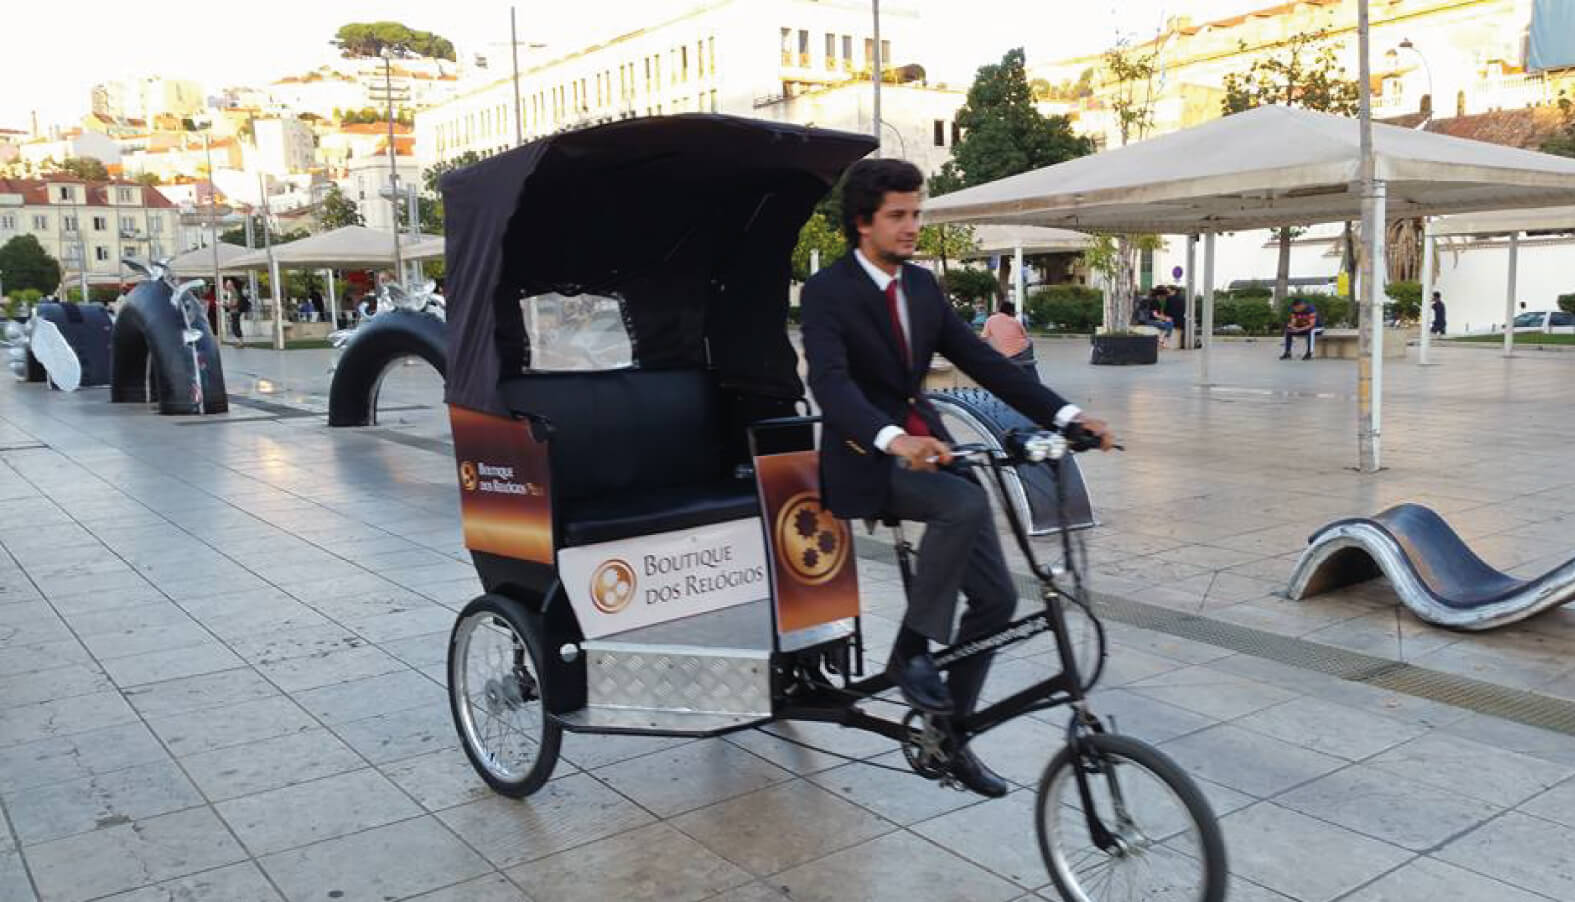 Rickshaw - Activação de Marca - Boutique dos Relogios - EventsPortugal